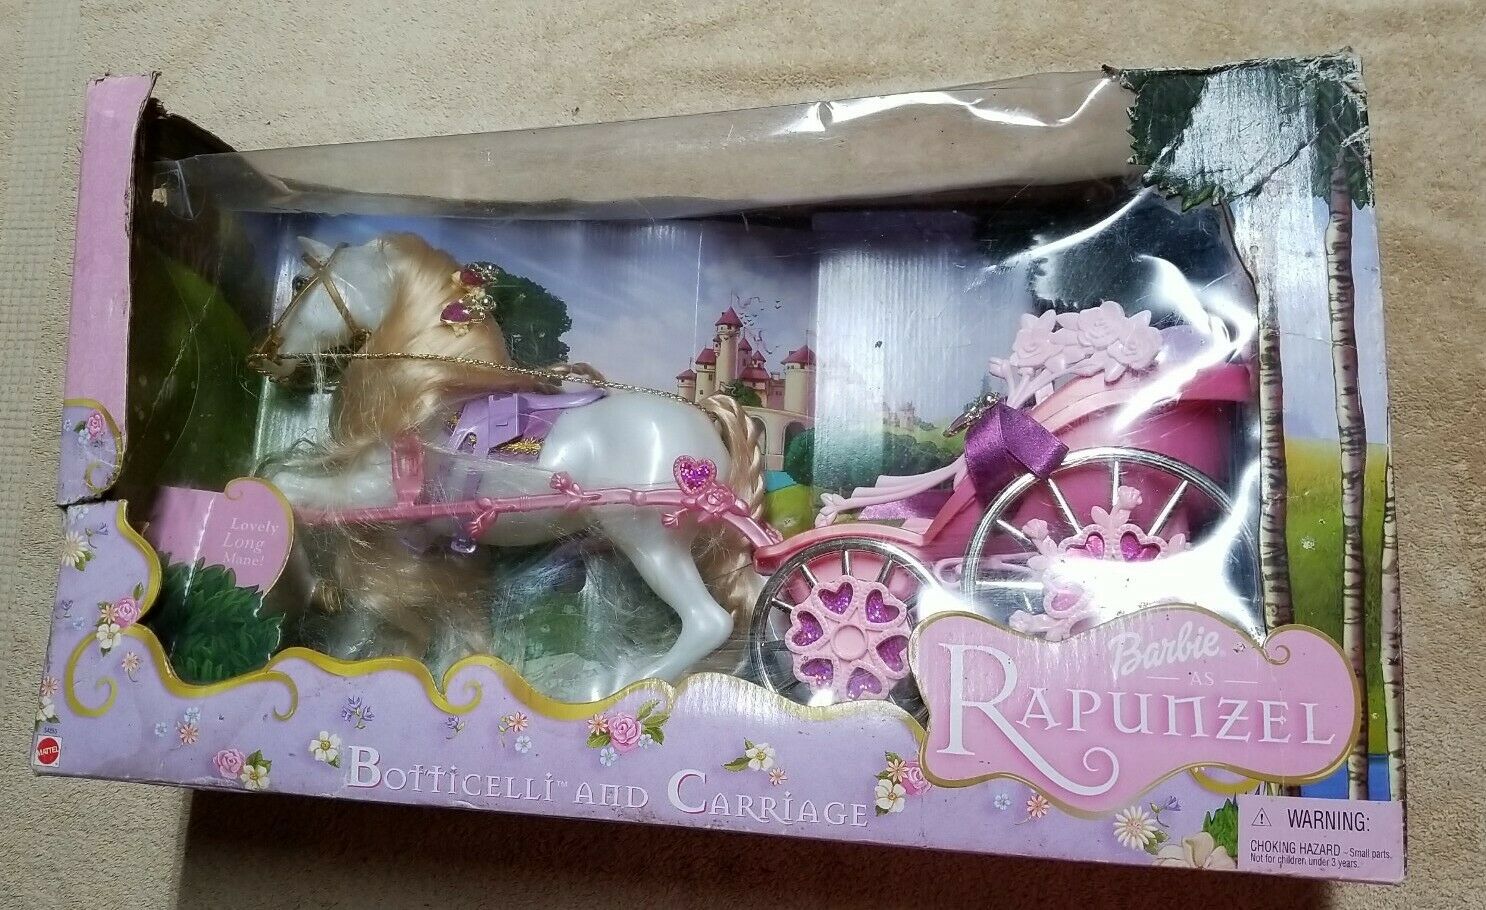 New Vintage 2001 Rapunzel Barbie Botticelli Horse & Carriage Read Damage Box